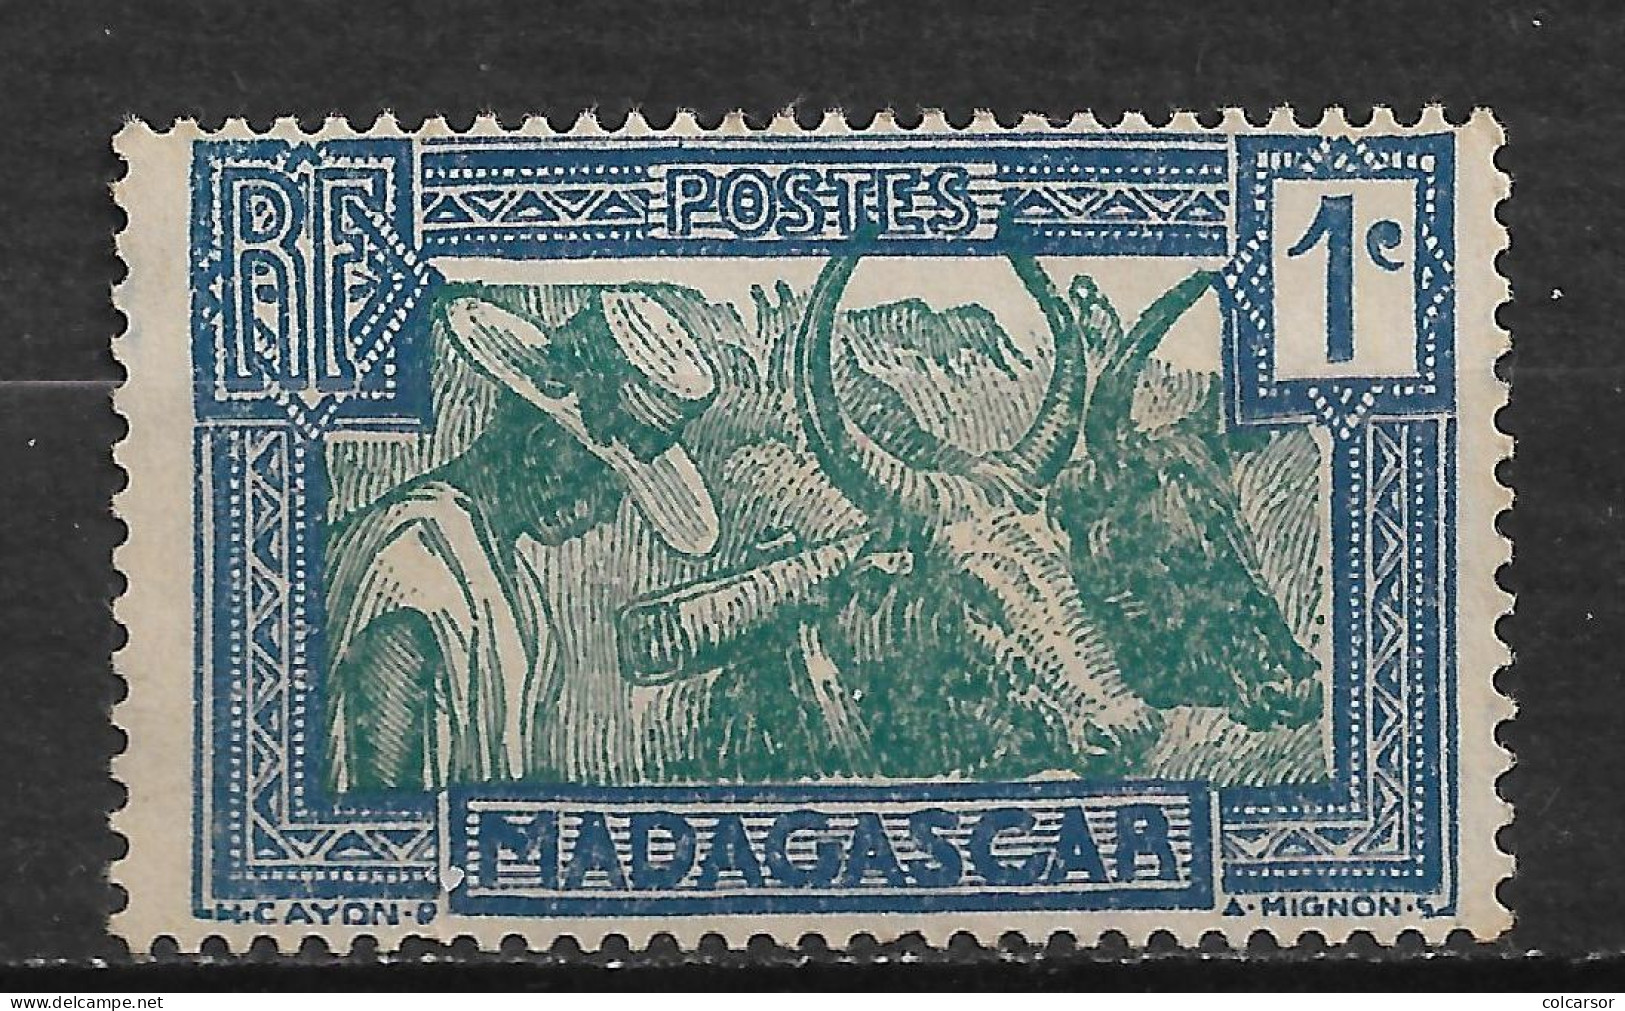 MADAGASCAR N°161A - Nuovi